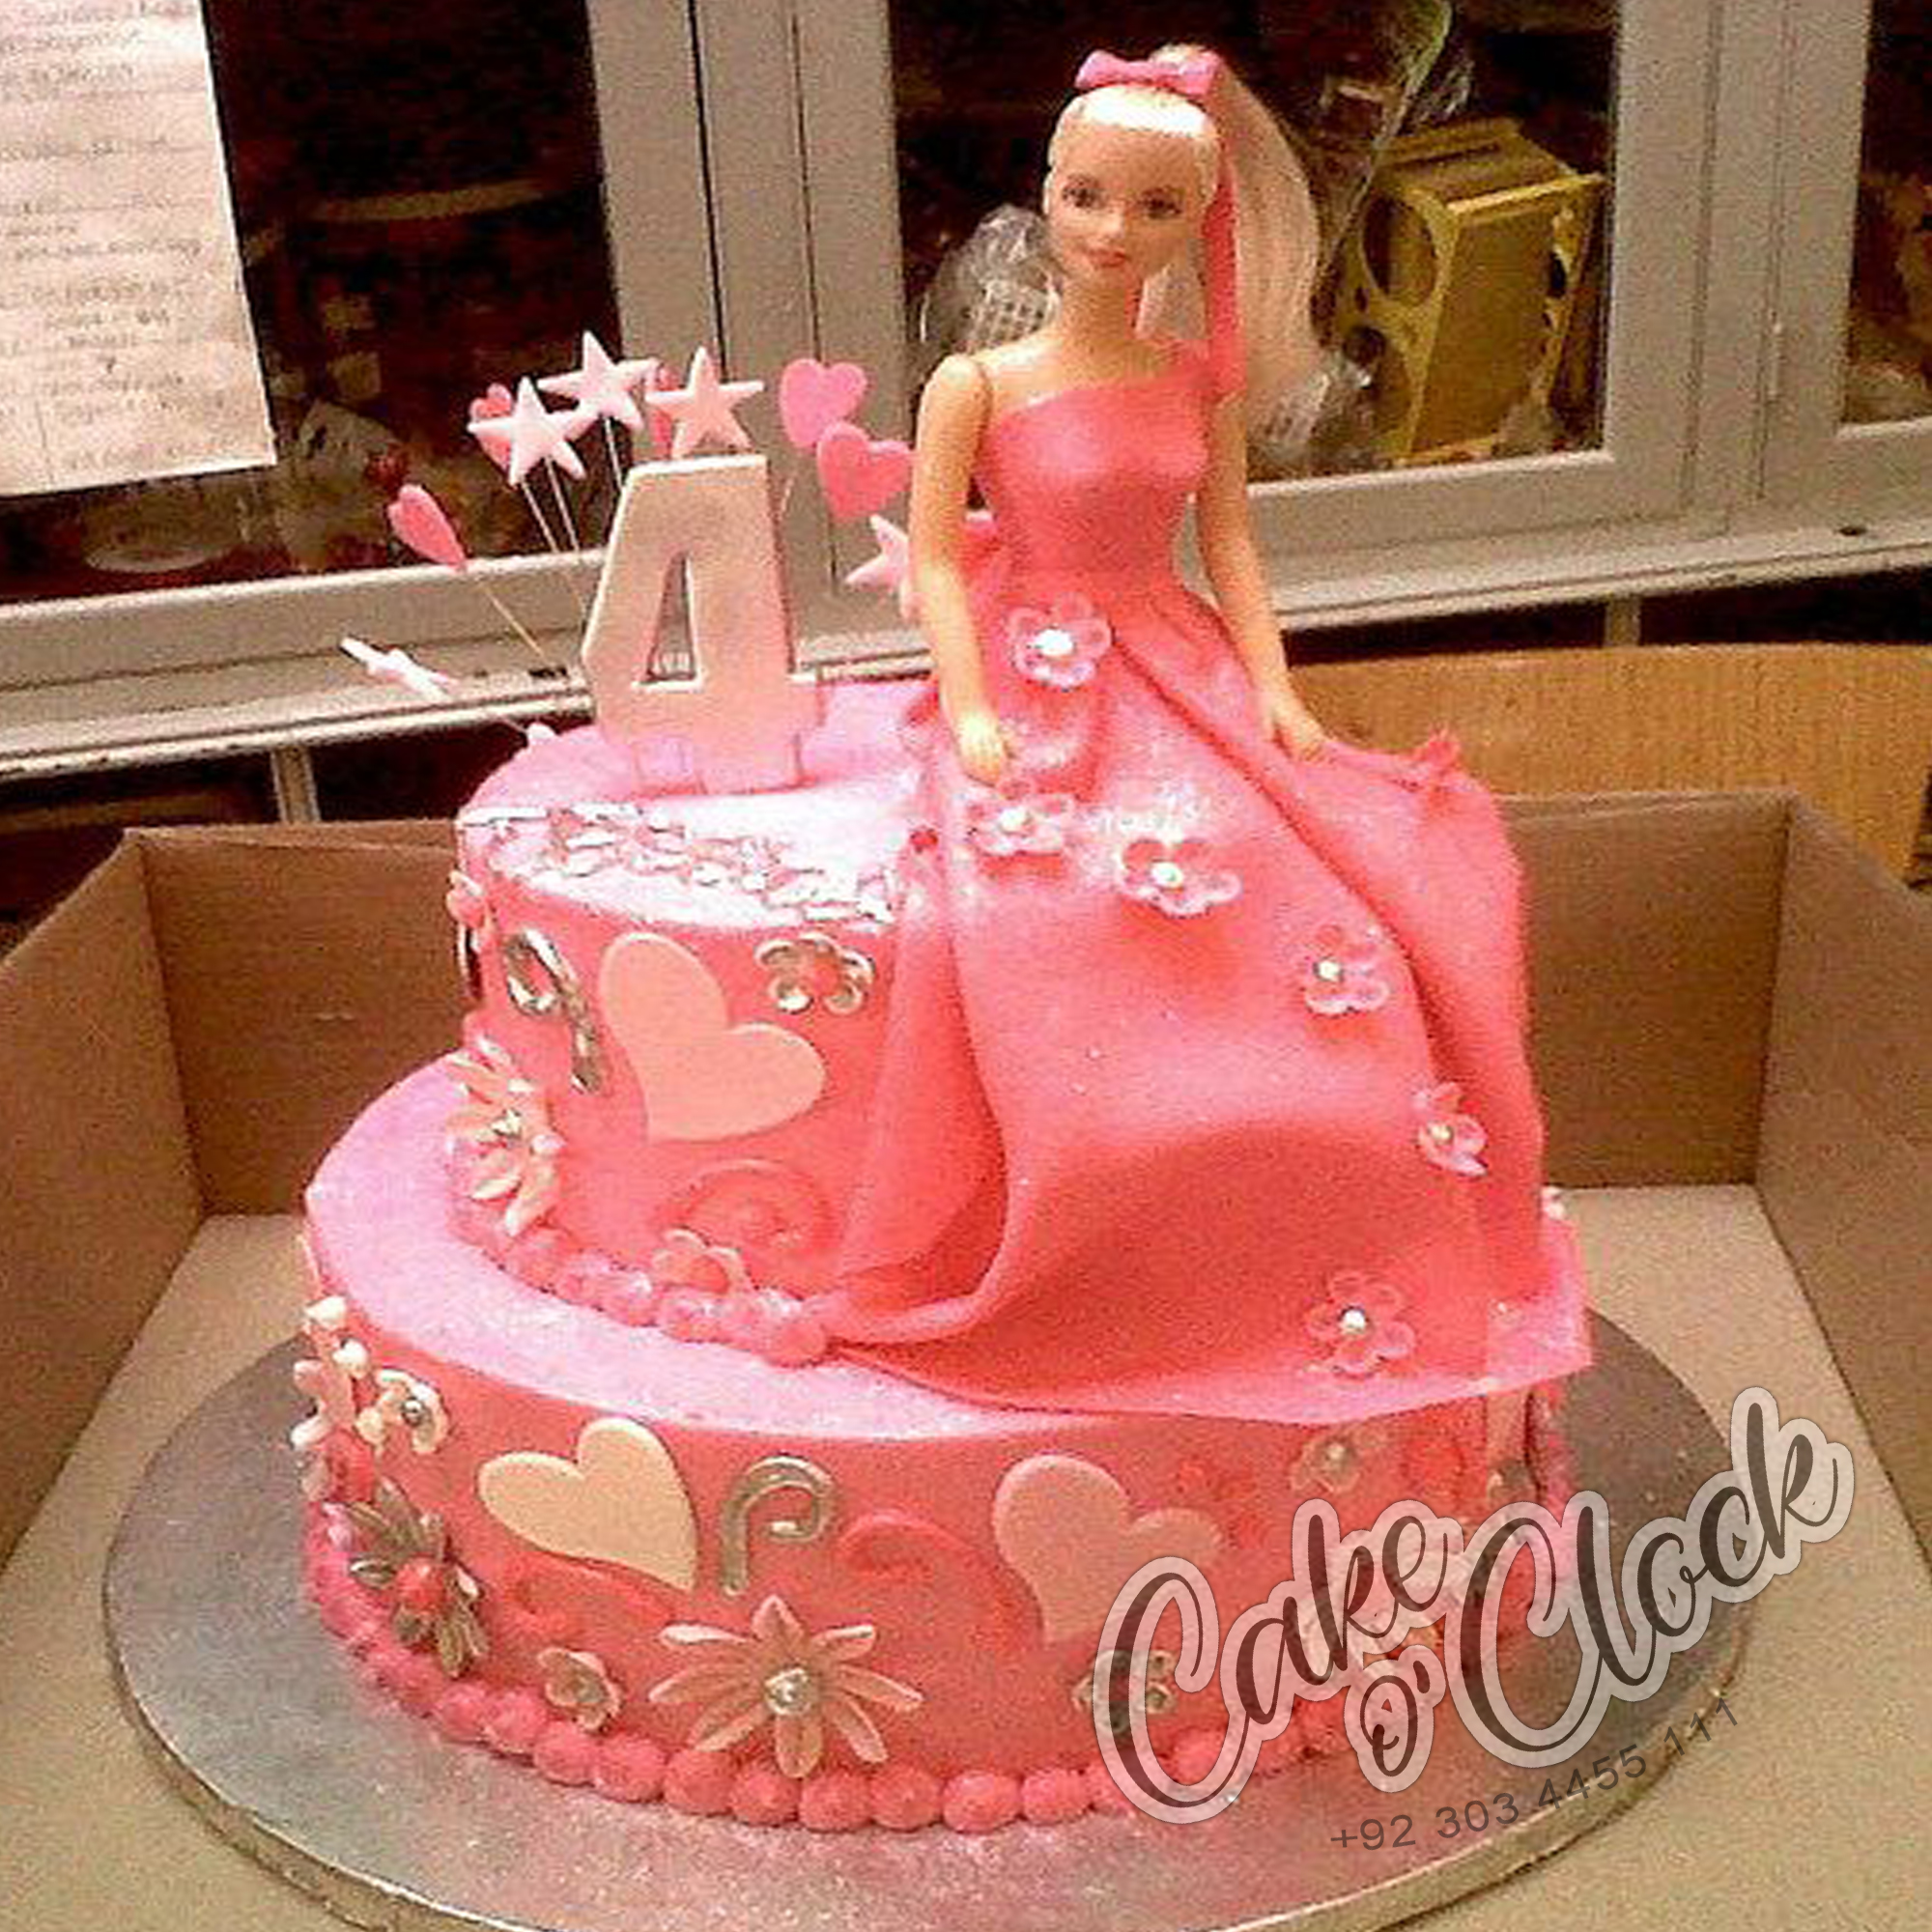 unique Barbie doll cake design Barbie cake design - YouTube-sgquangbinhtourist.com.vn